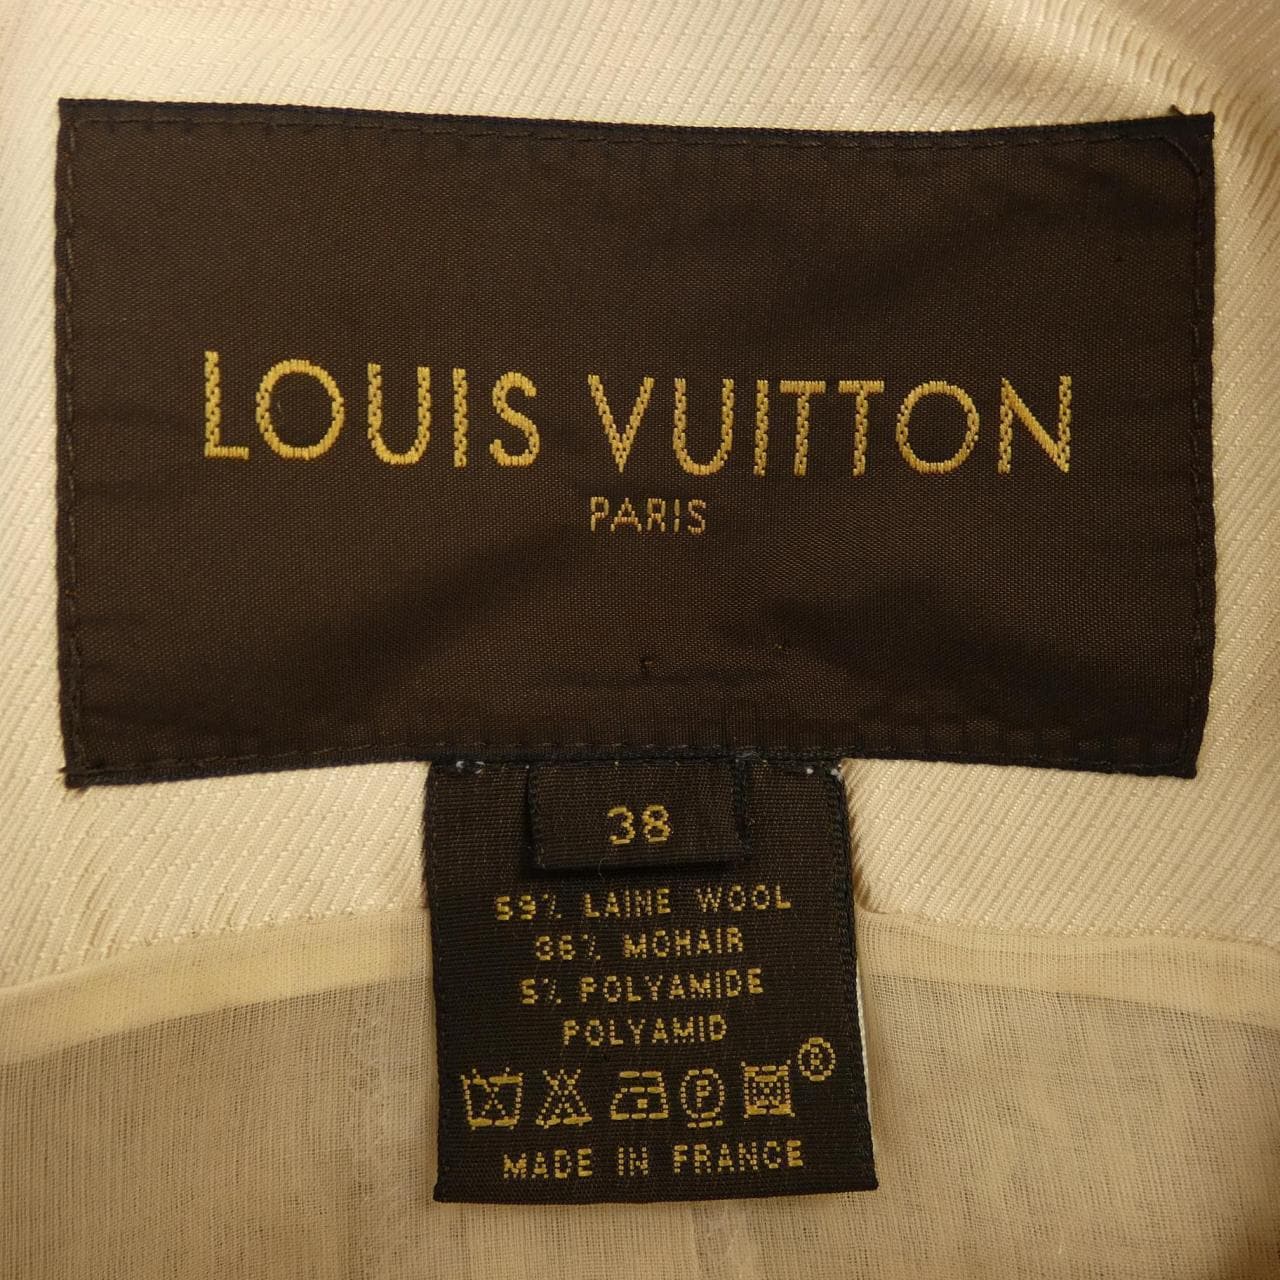 [vintage] LOUIS VUITTON VUITTON coat